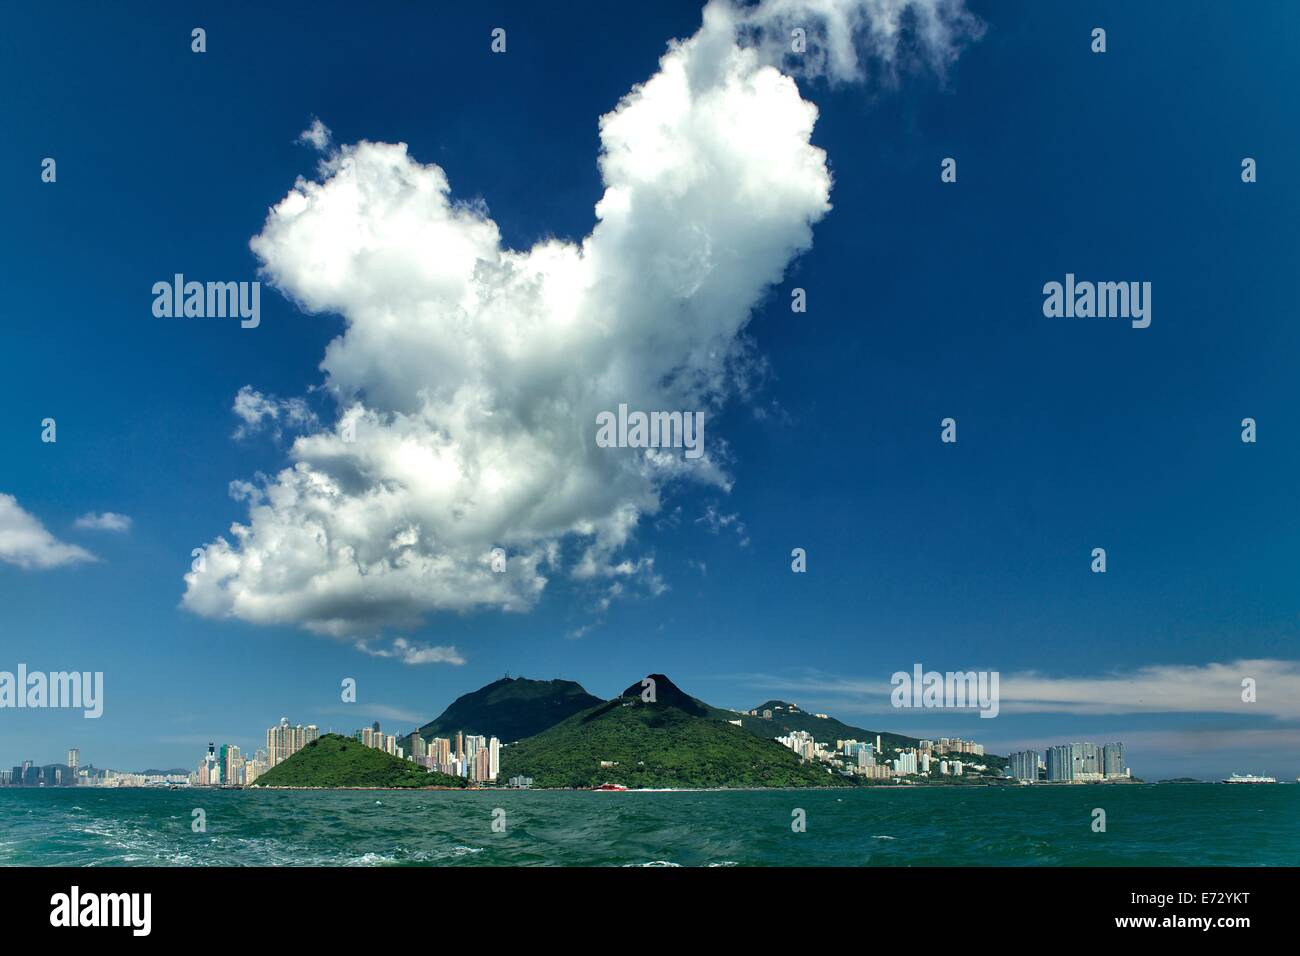 Un nuage plane sur l'île de Hong Kong Banque D'Images